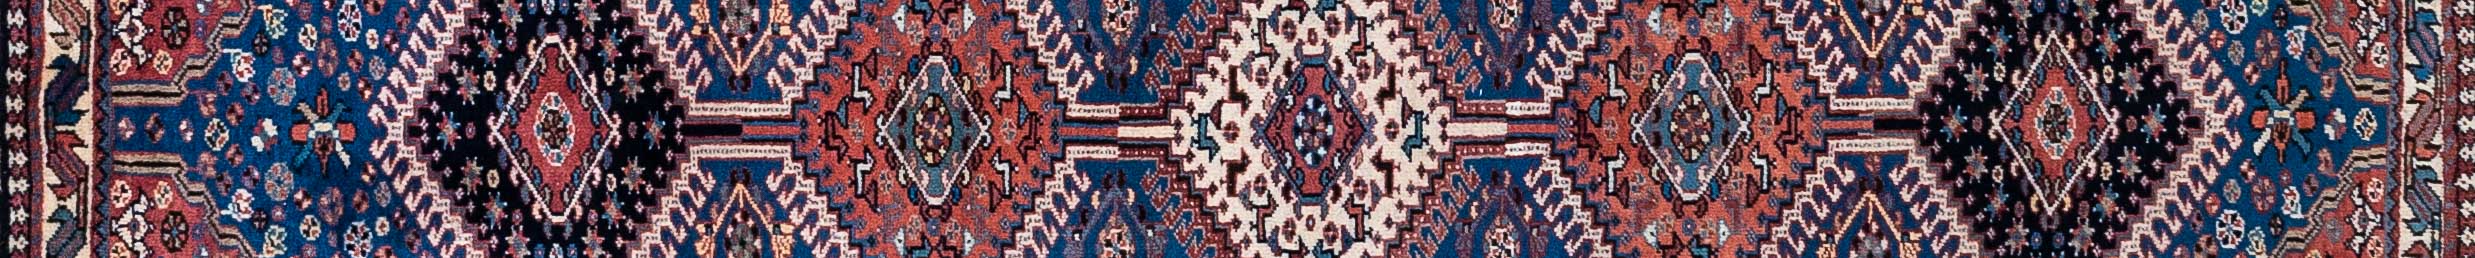 Yalameh Persian Carpet Rug N1Carpet Canada Montreal Tapis Persan 890